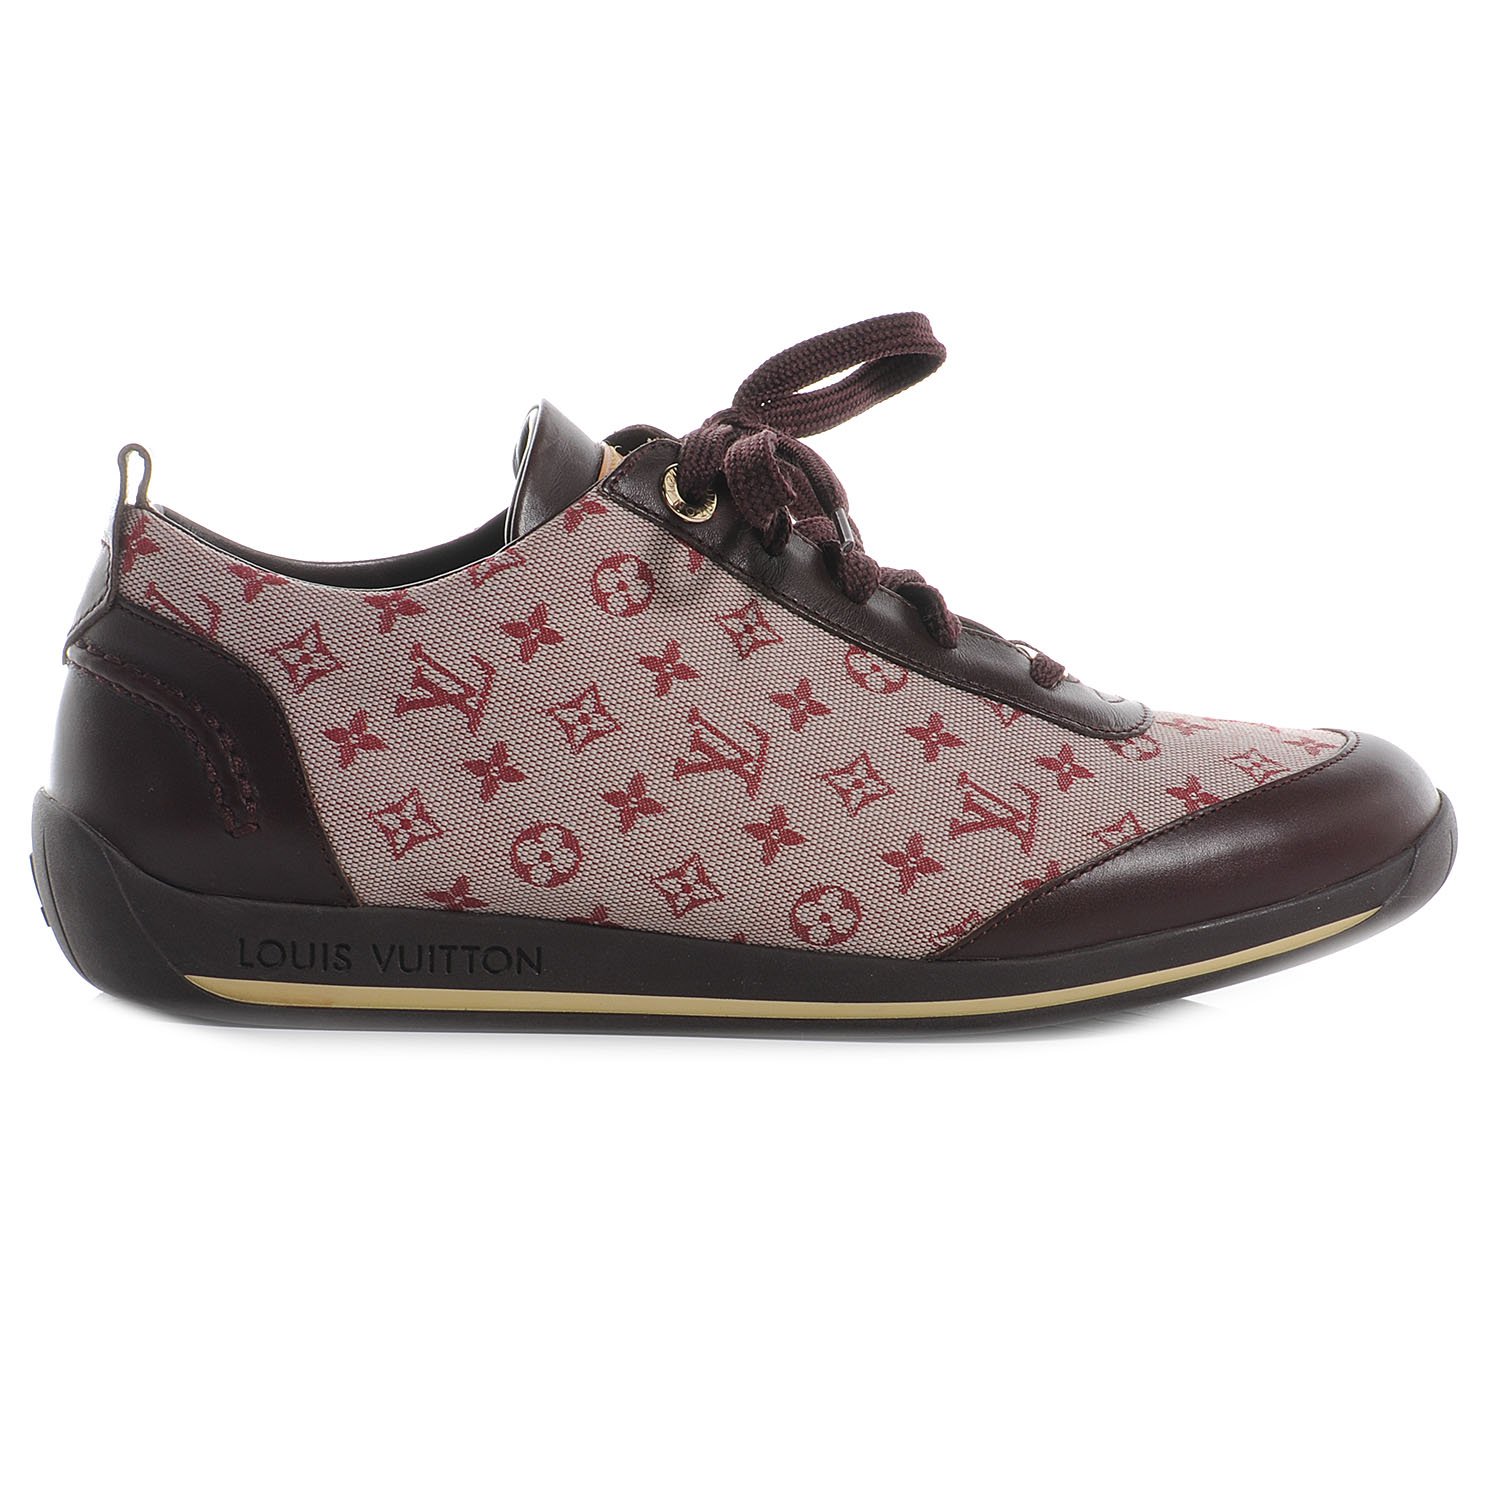 Louis Vuitton Tennis Shoes For Men | IQS Executive